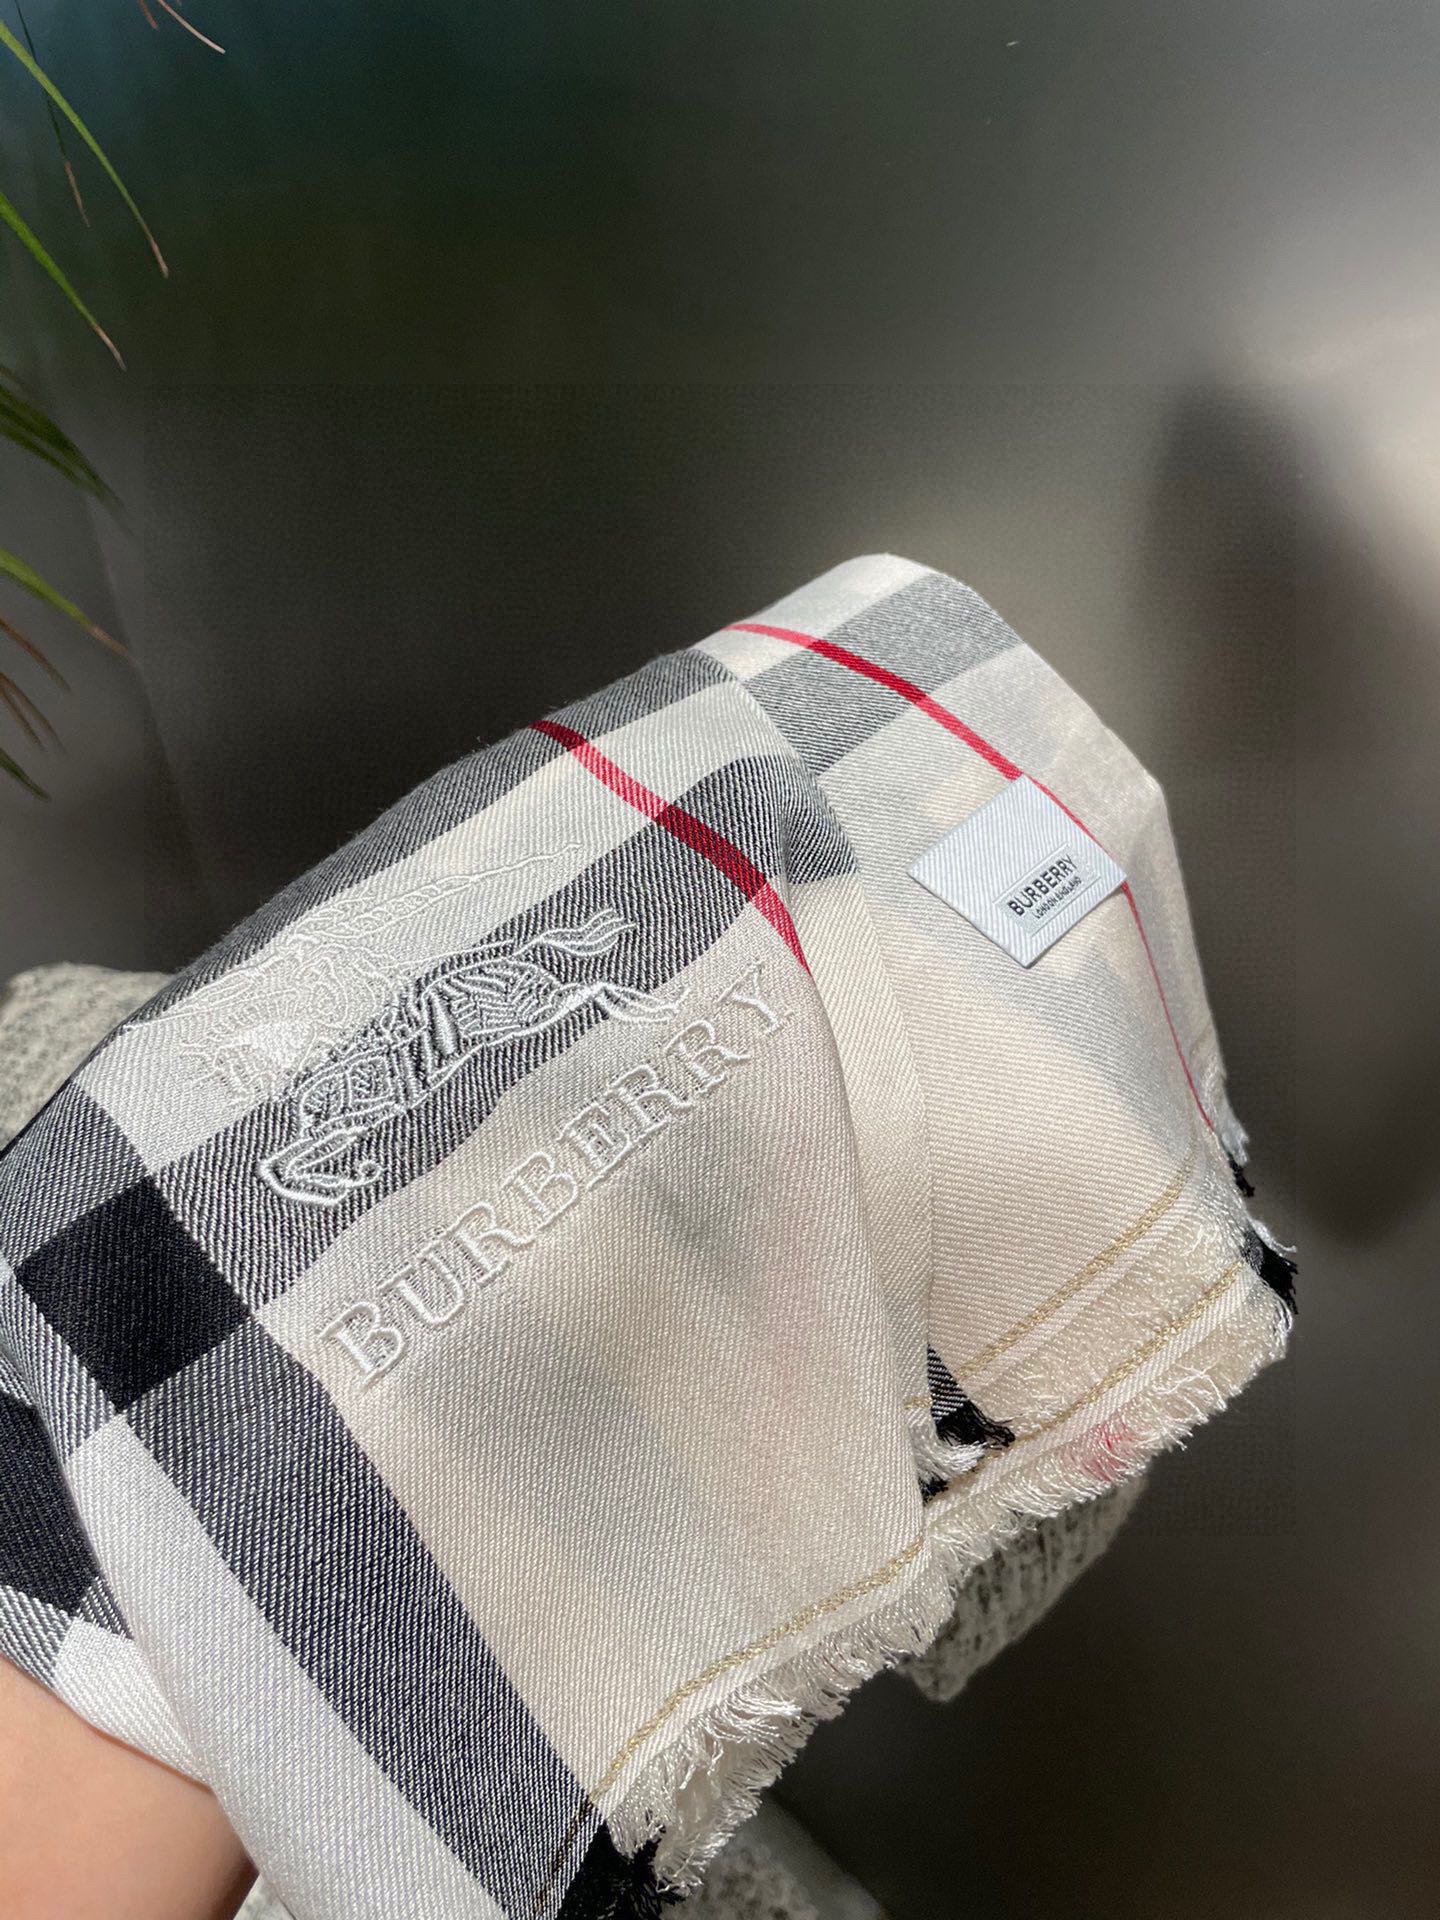 ️巴宝莉正装系列货专供旗舰店的viP顶级苏格兰进口山羊绒无比的高贵优雅知性的款式简洁大气的设计绝对的不是